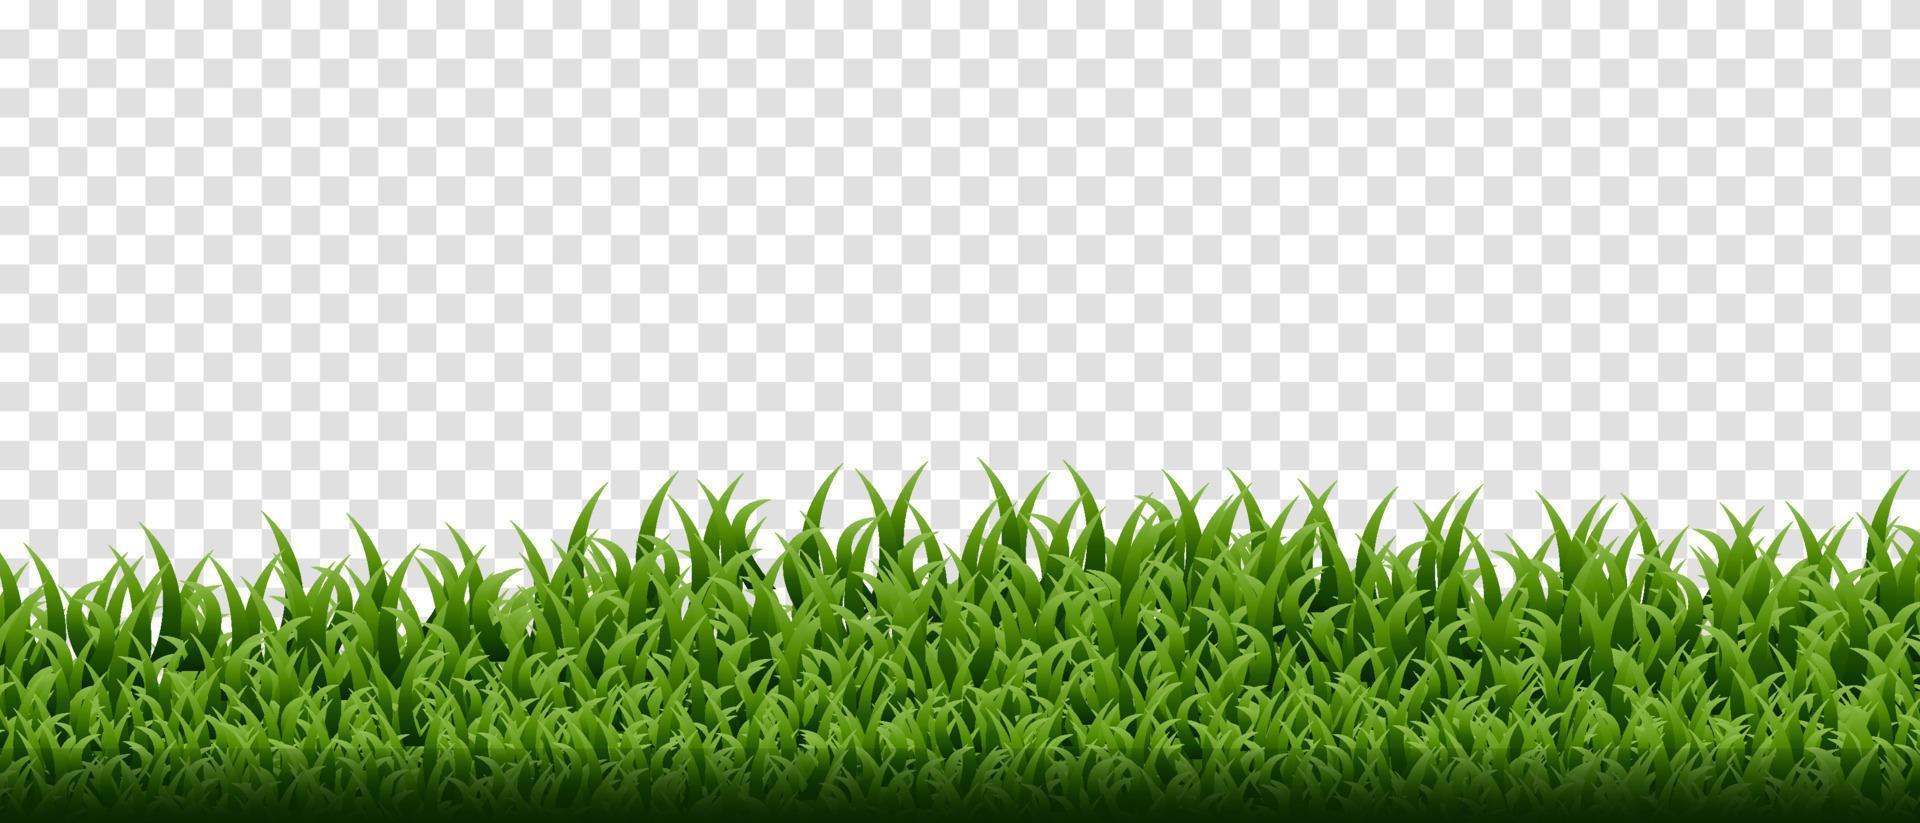 grüne Grasgrenze auf transparentem Hintergrund eingestellt vektor